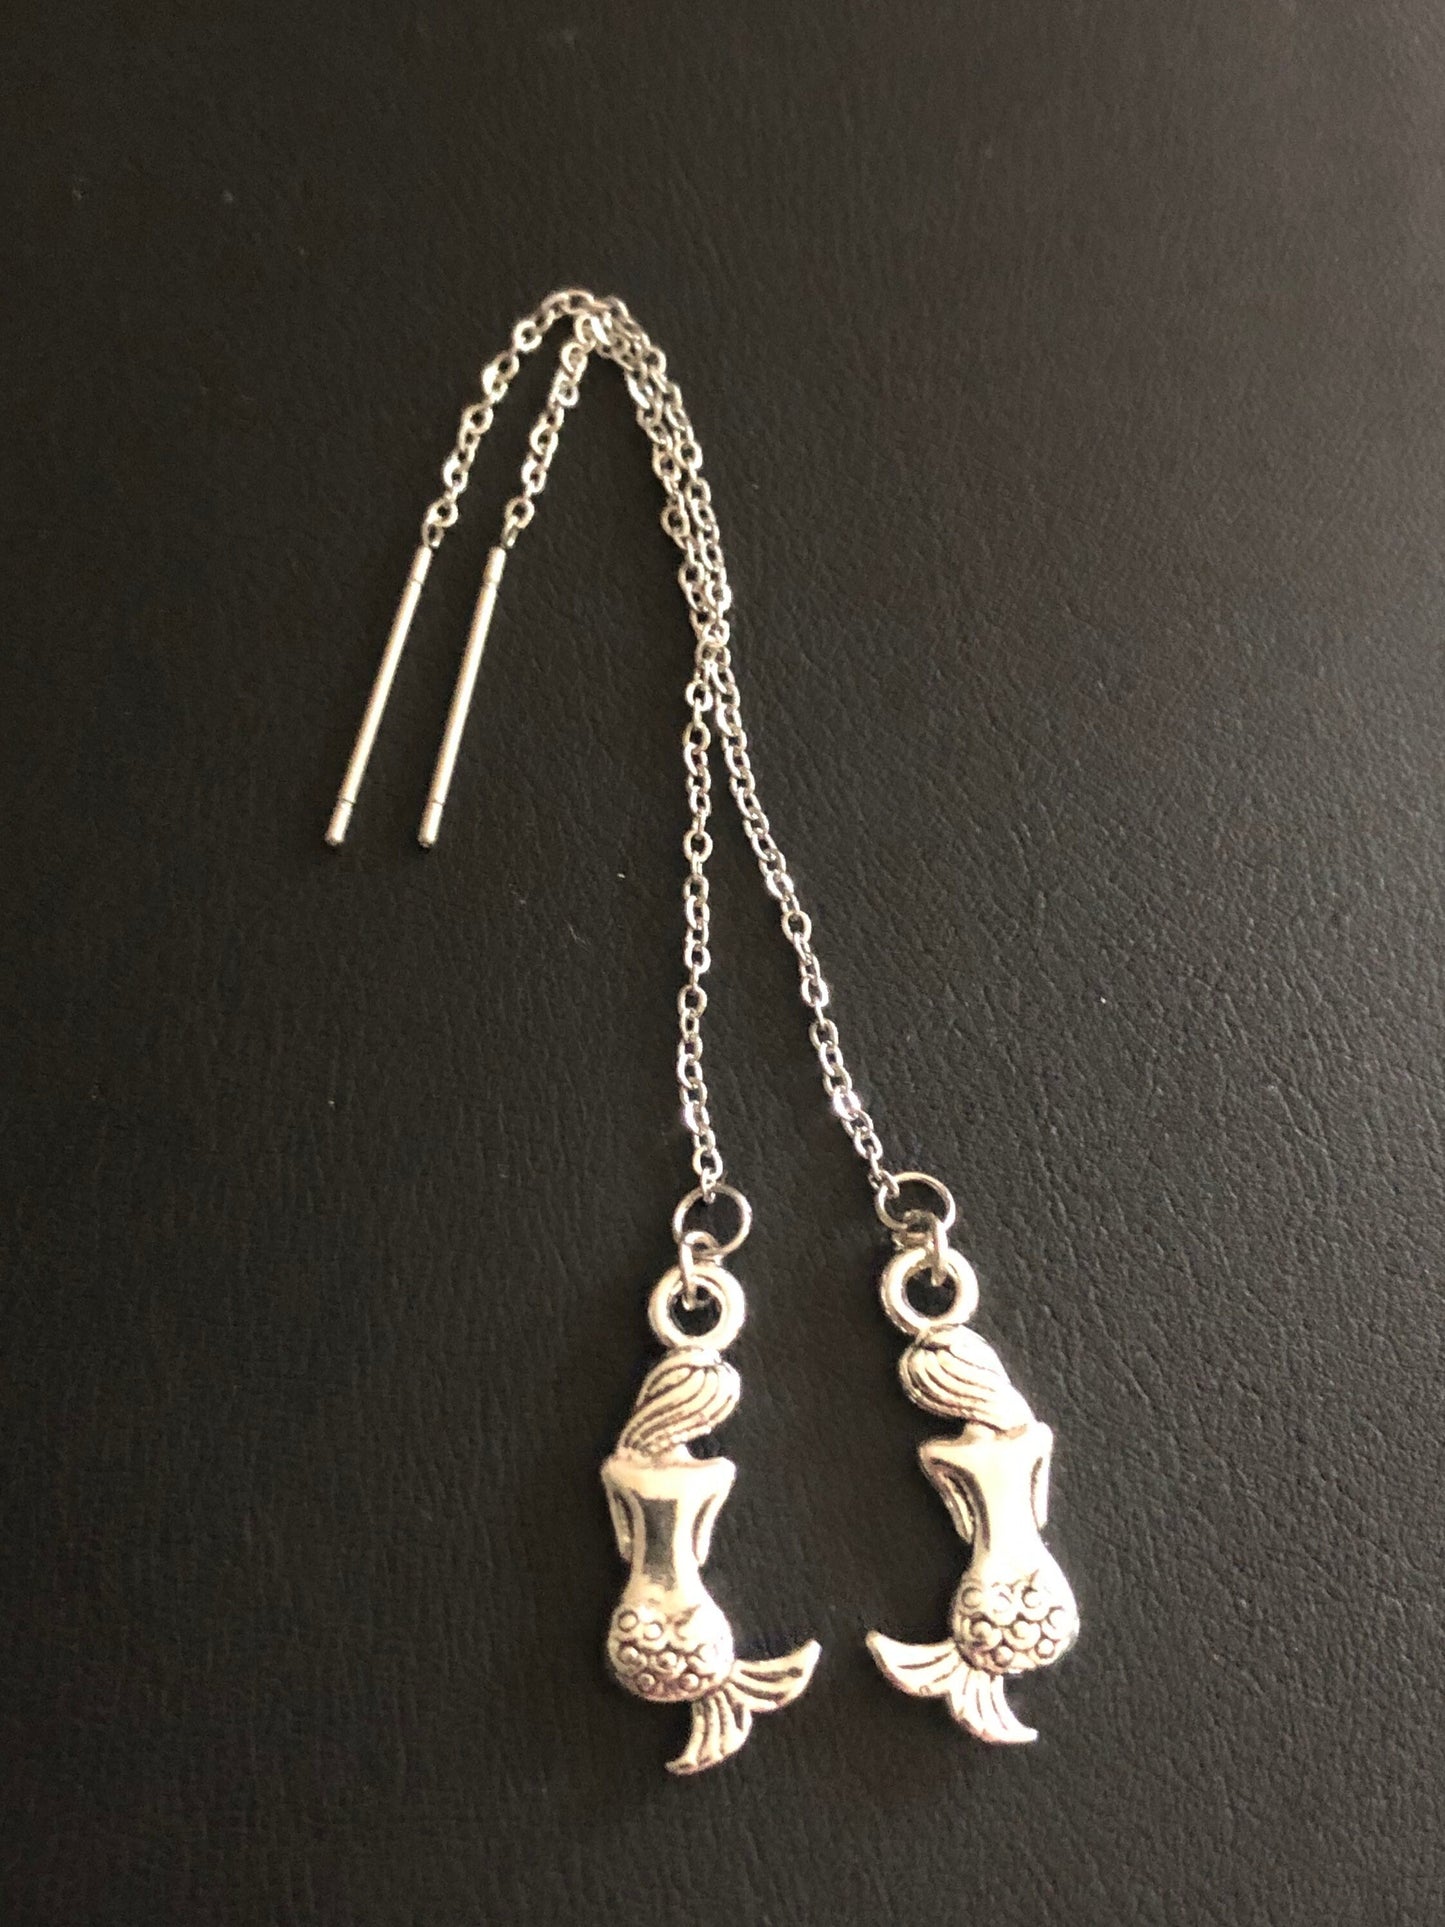 Silver mermaid drop earrings pierced pull through threader earrings stainless steel